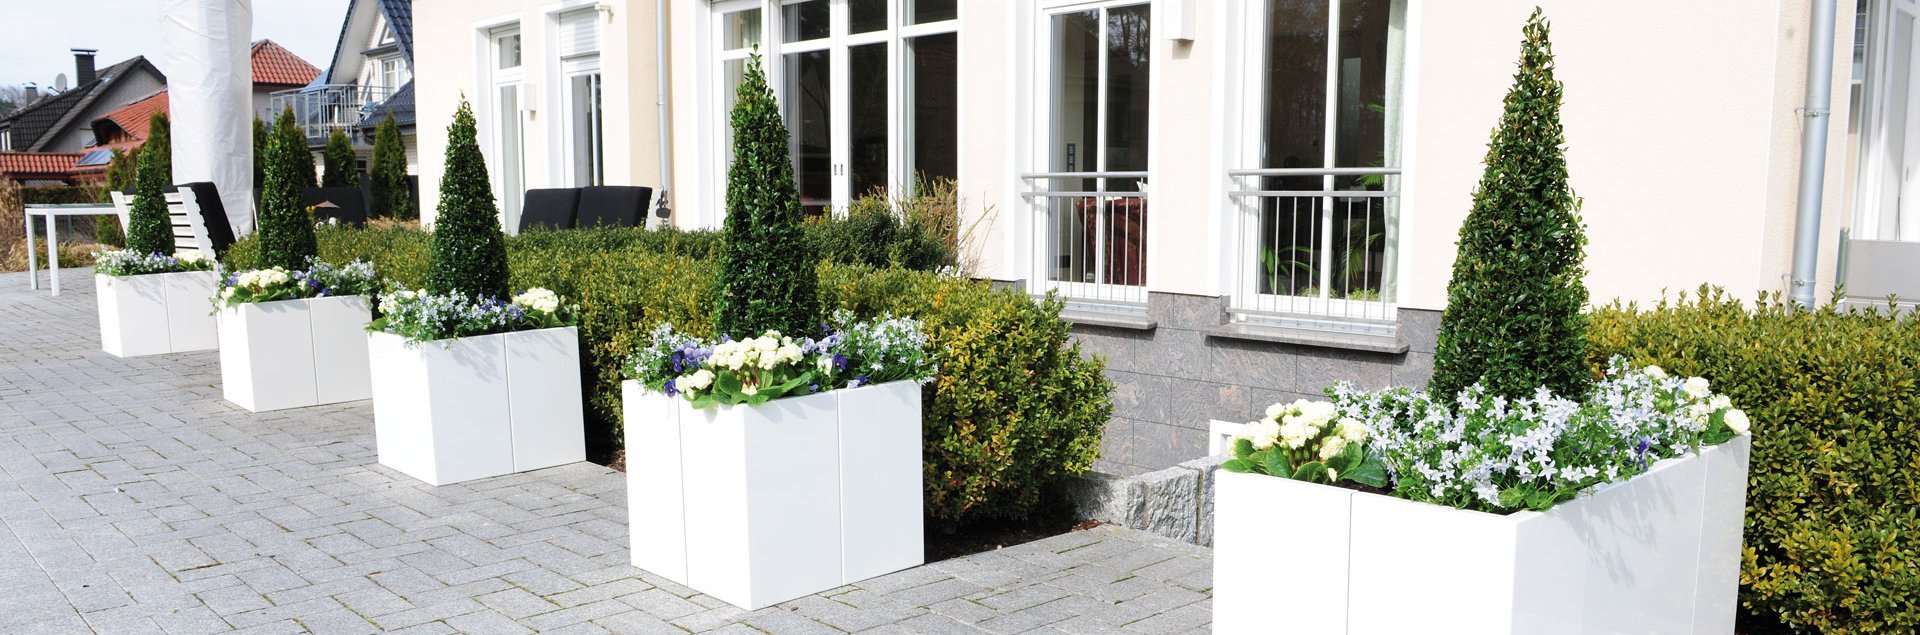 Modulare Pflanzkästen in weiß vor einem Haus mit blühenden Pflanzen